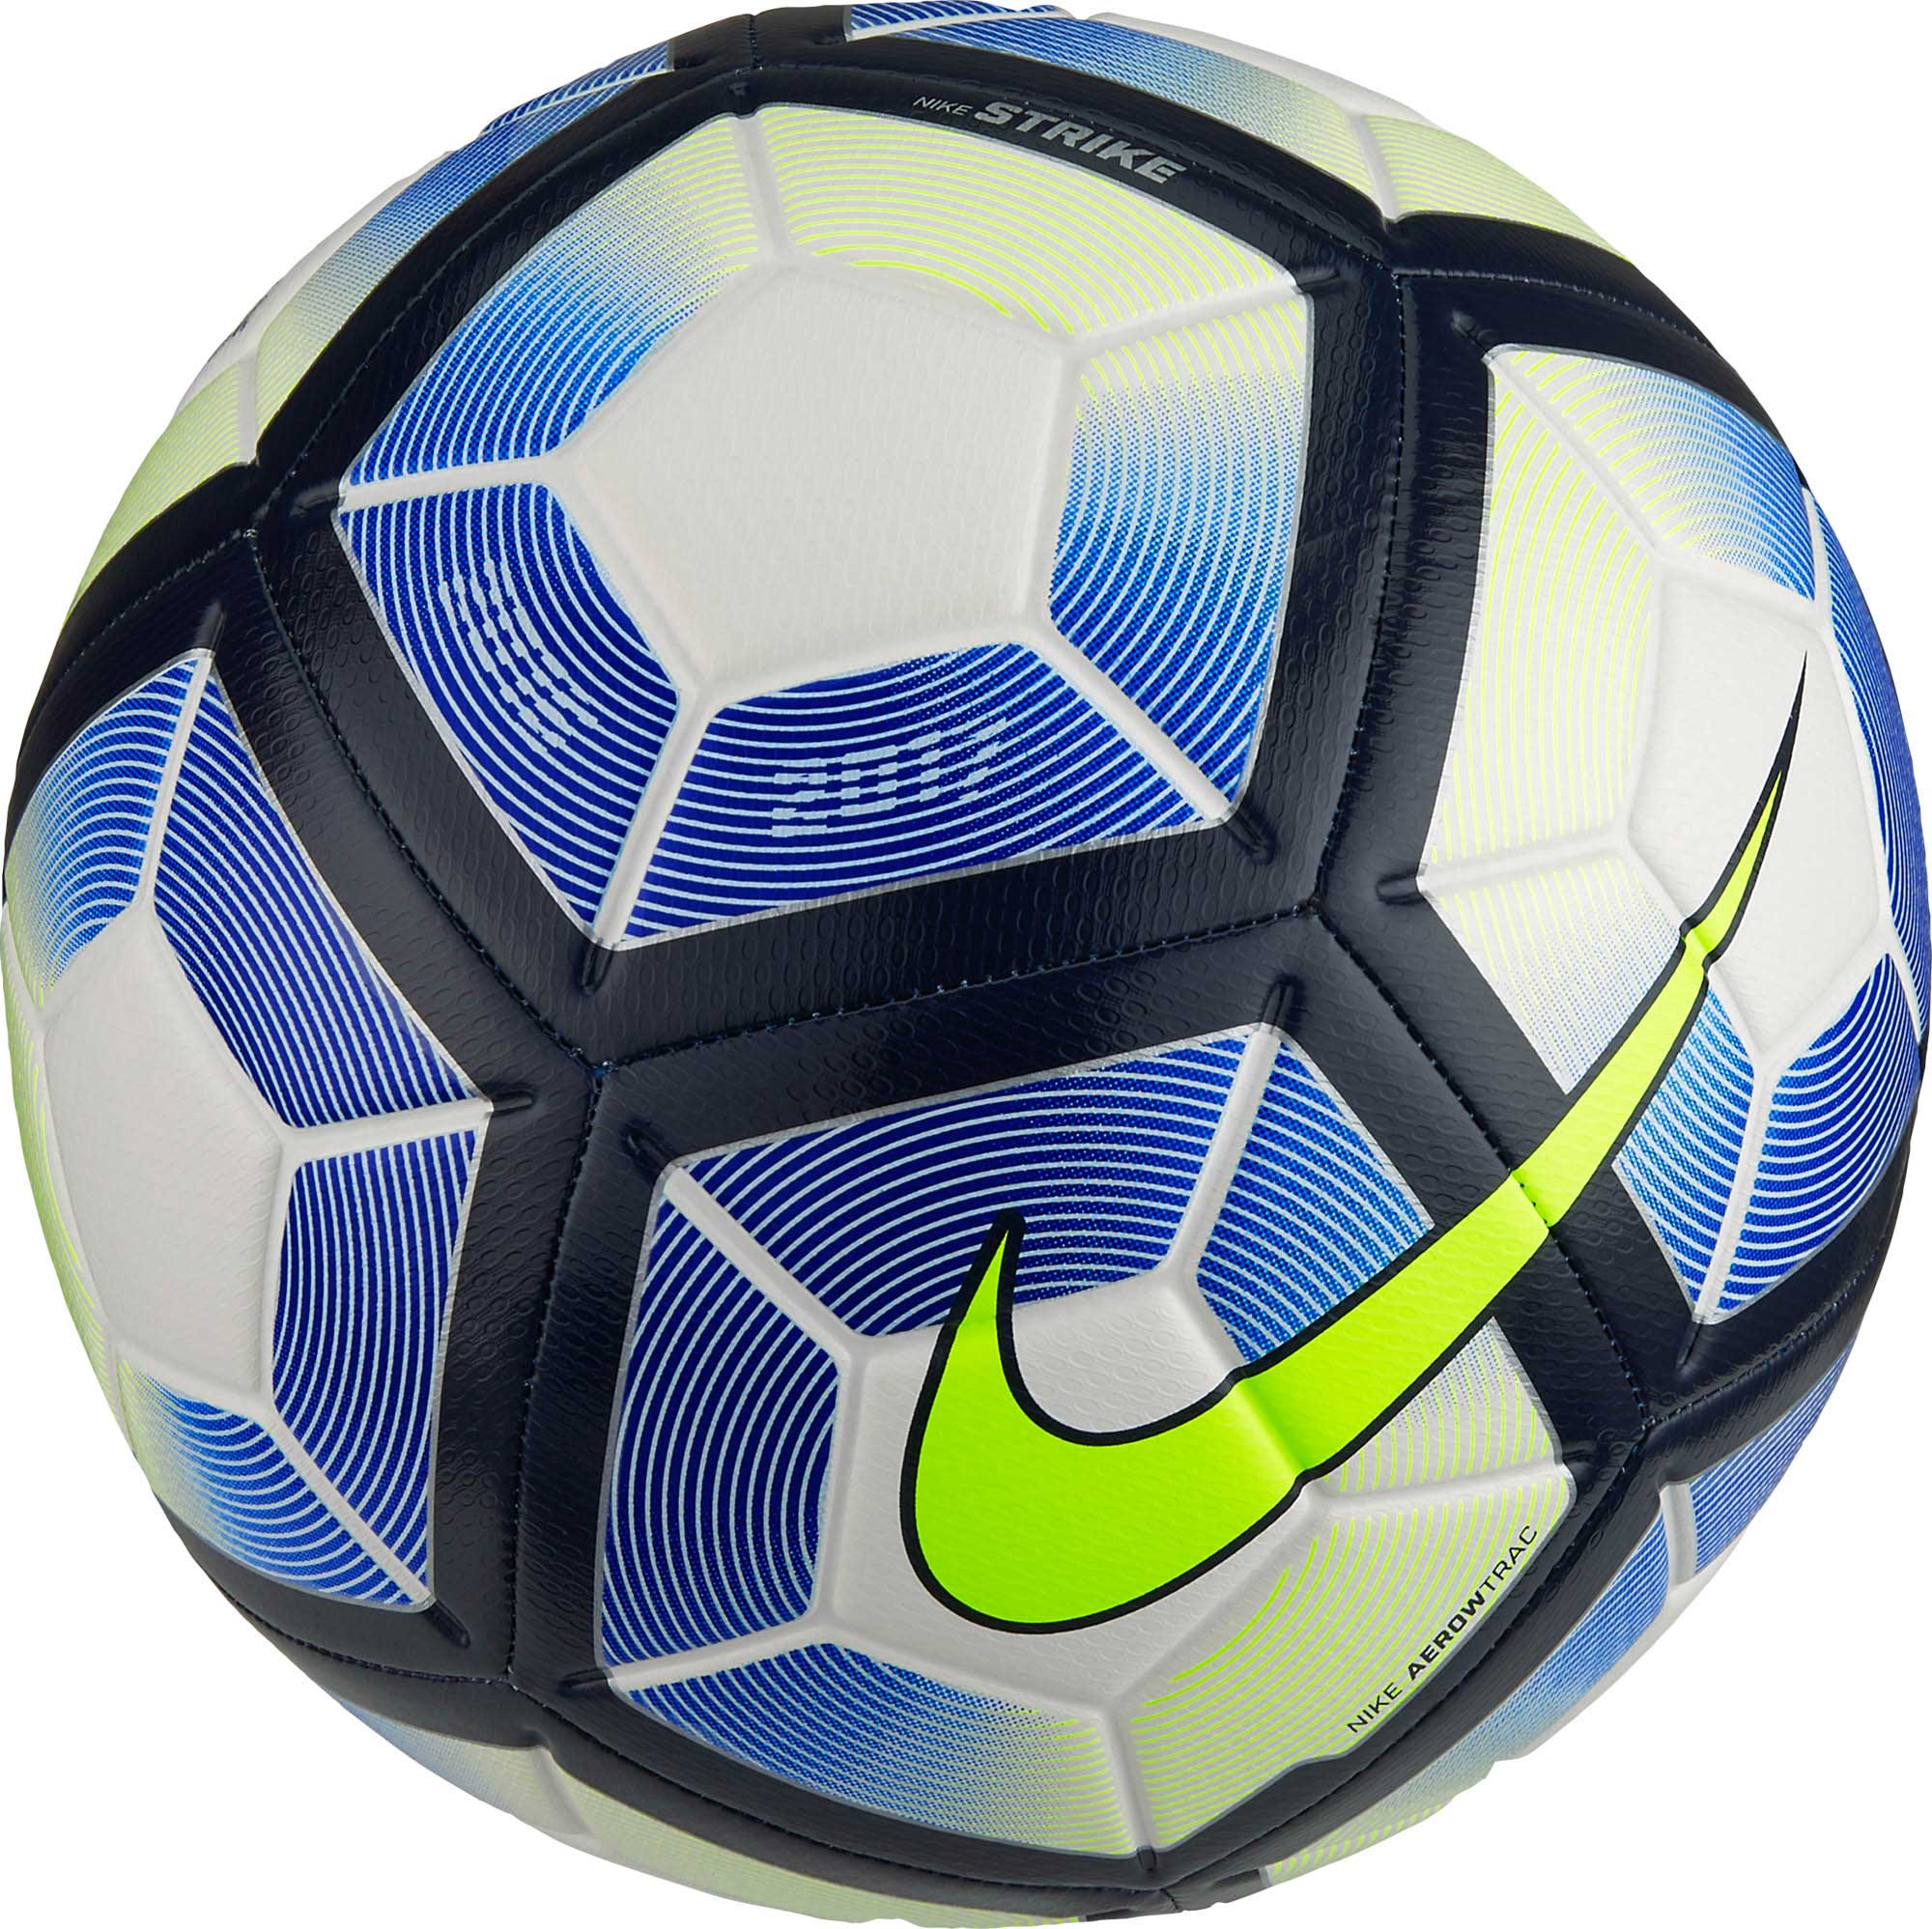 Miscellaneous goods law Dated Nike Strike Soccer Ball - White Nike Soccer Balls